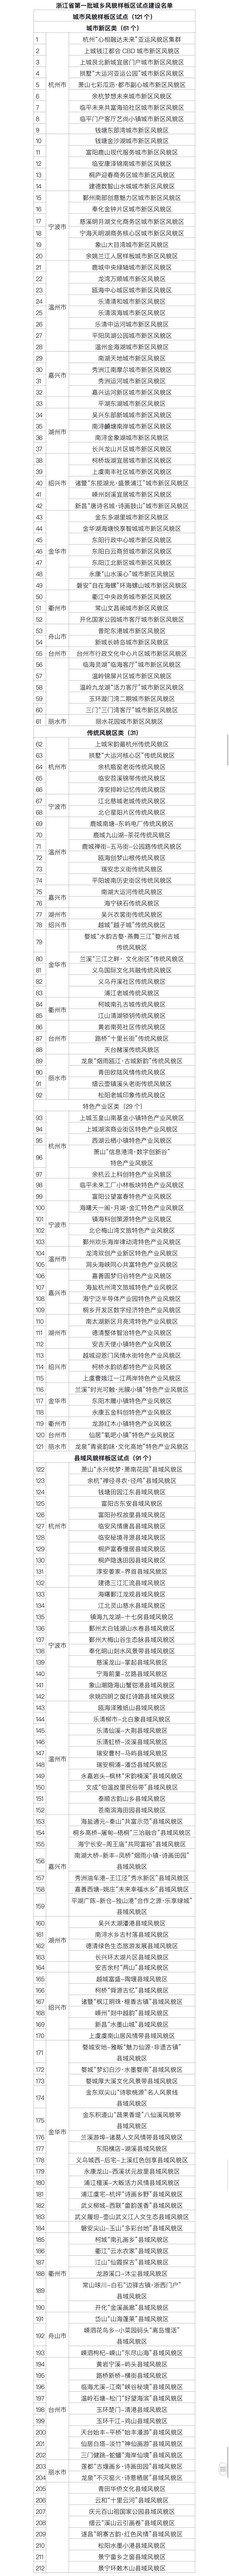 浙江发布首批212个城乡风貌样板区试点建设名单 